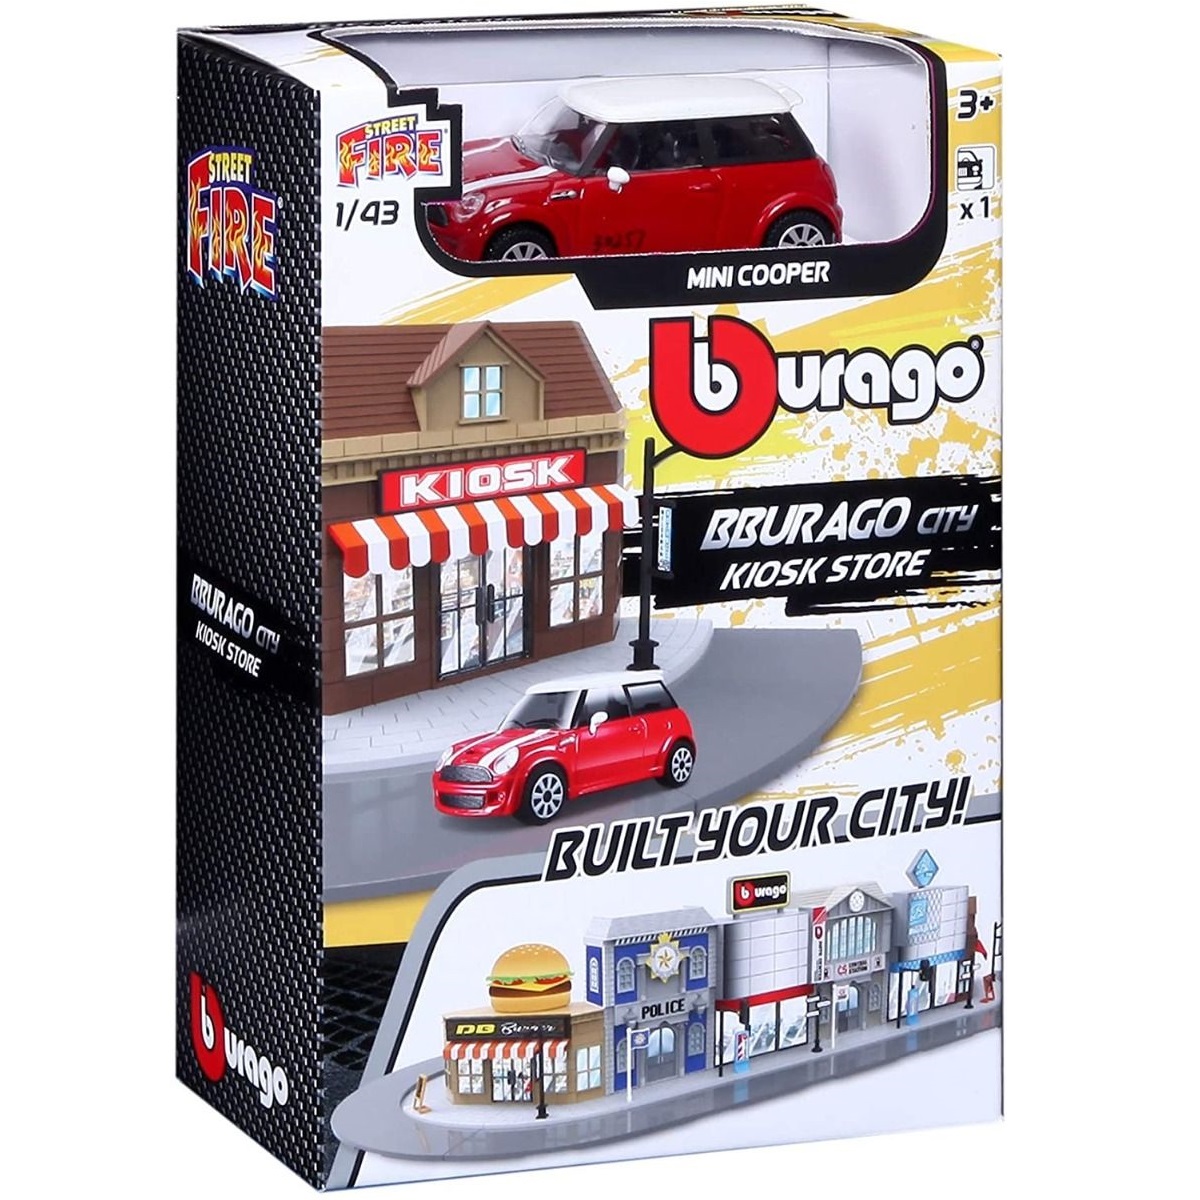 Игровой набор BBURAGO Магазин-киоск с металлической машинкой, 1:43, красный, 18-31506 bburago коллекционная машинка 1 32 street fire mini cooper s cabriolet синяя